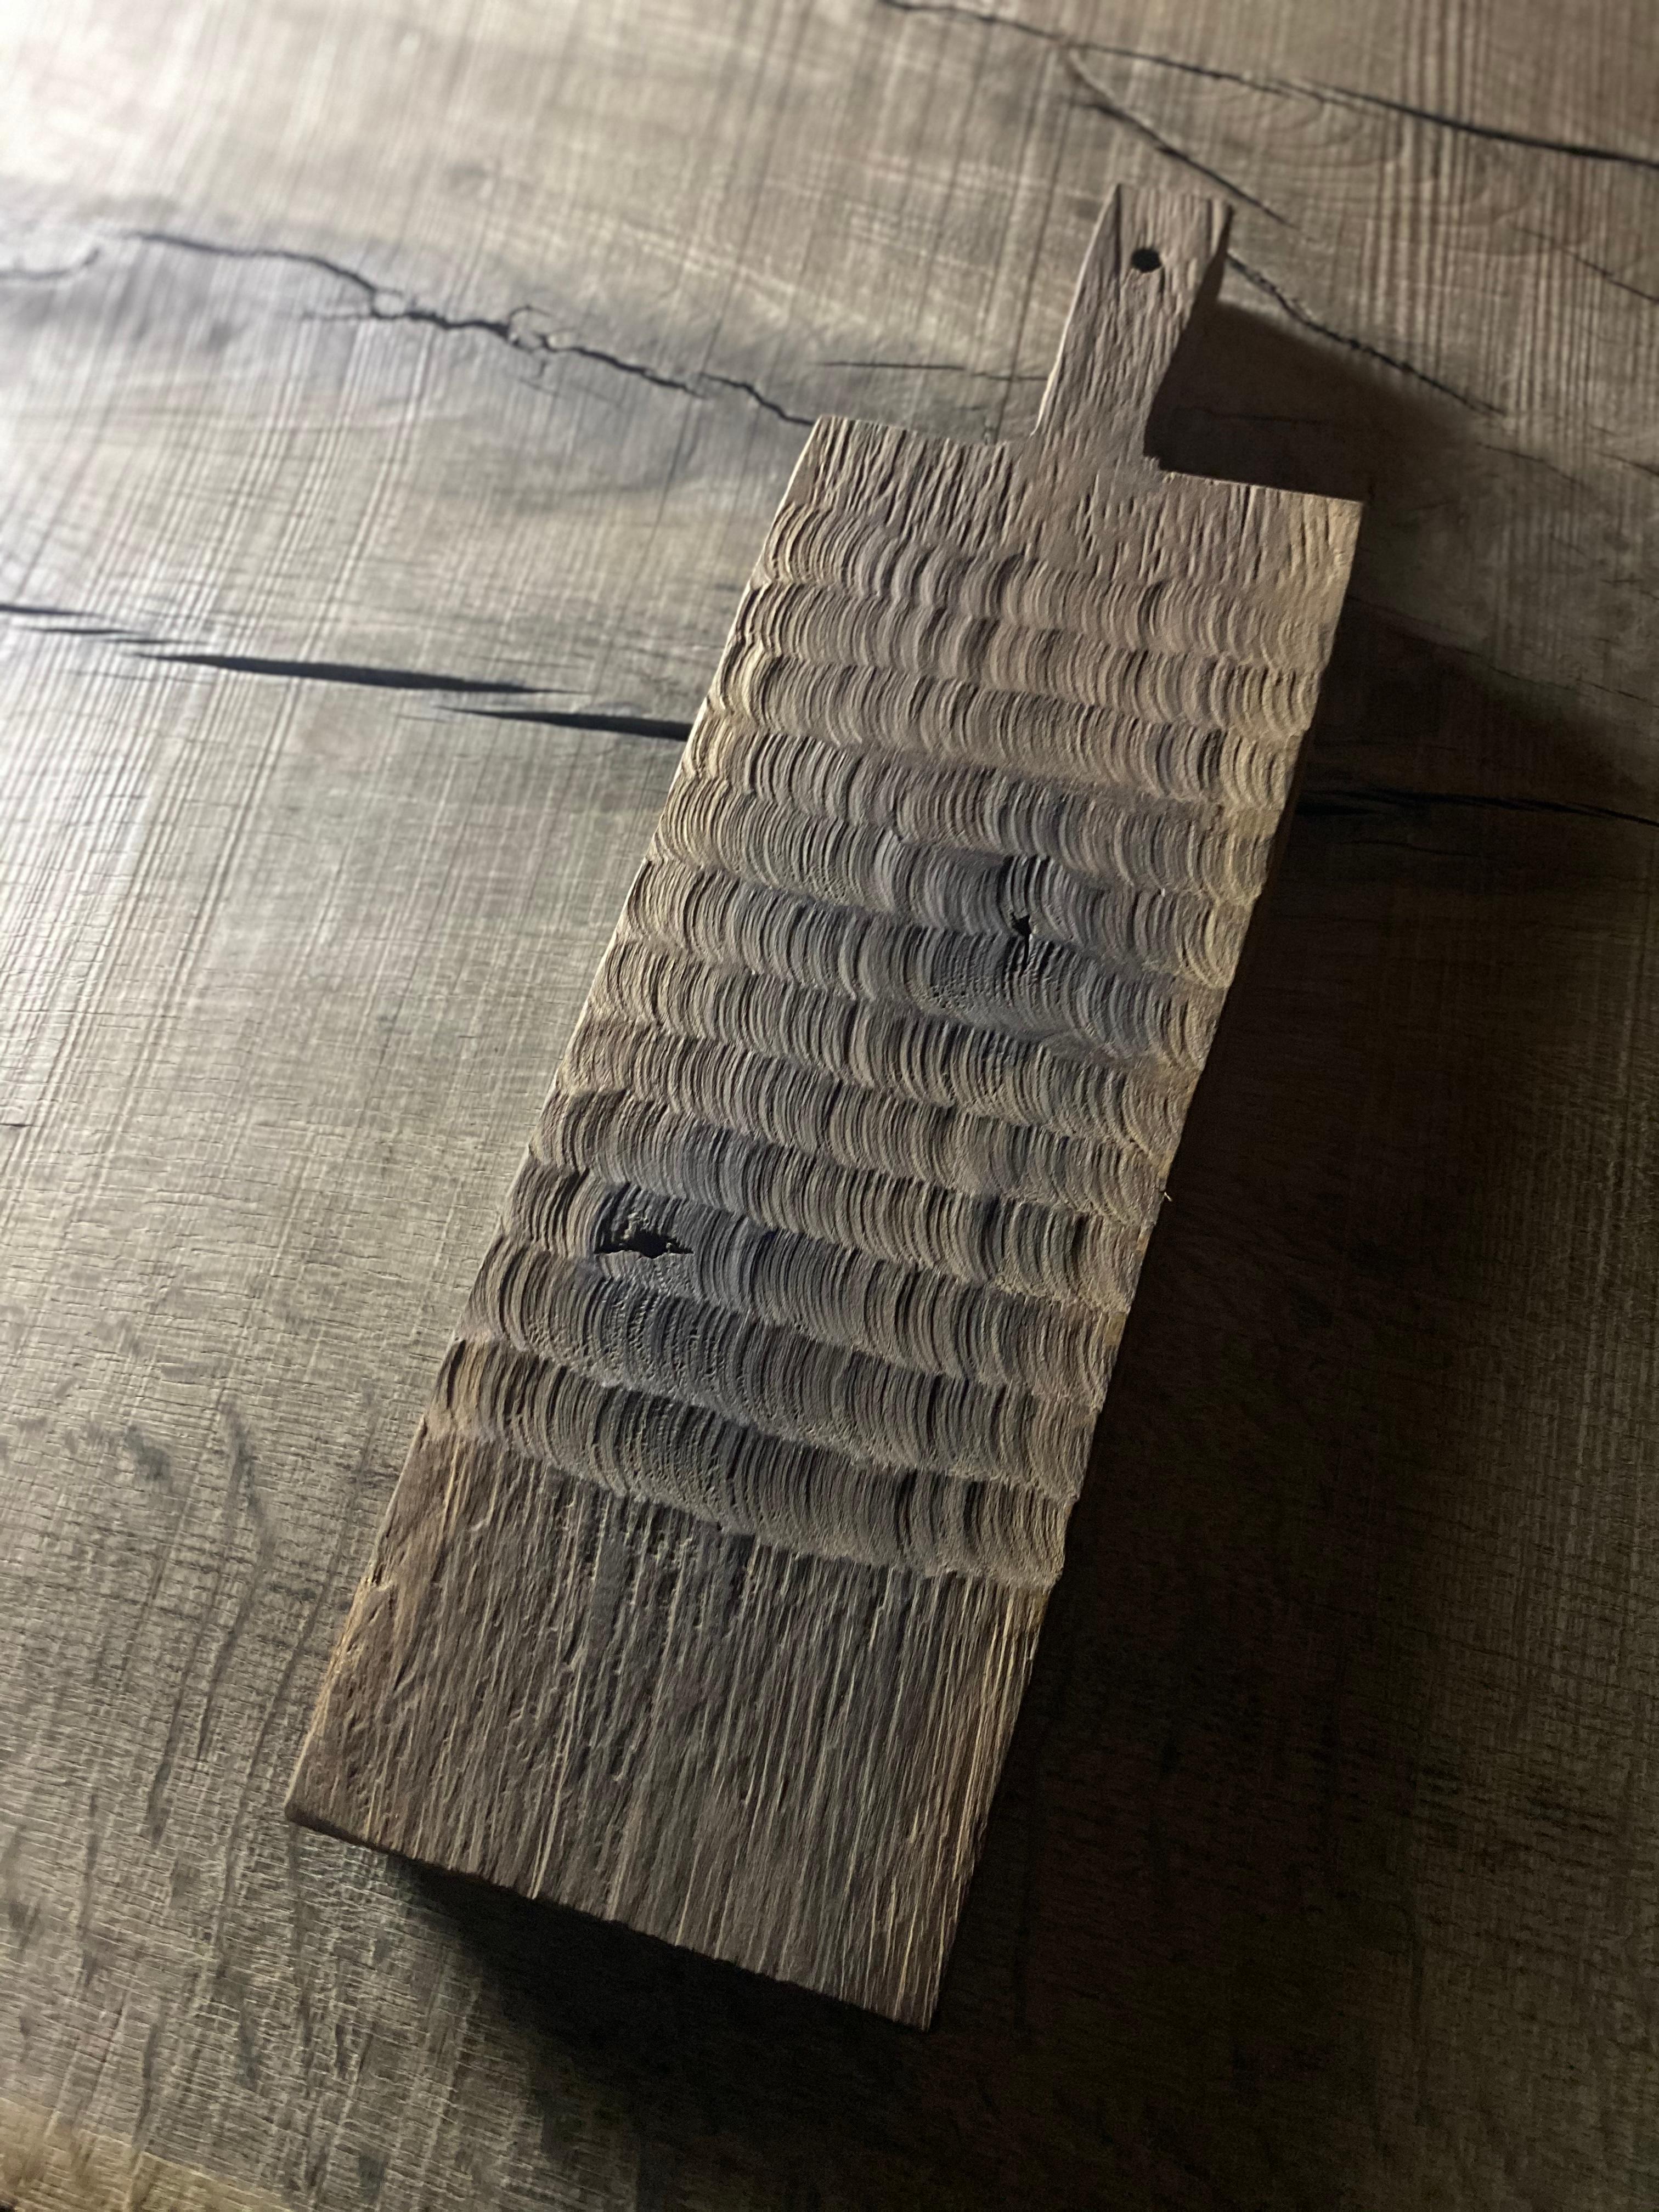 planche chêne sculpte